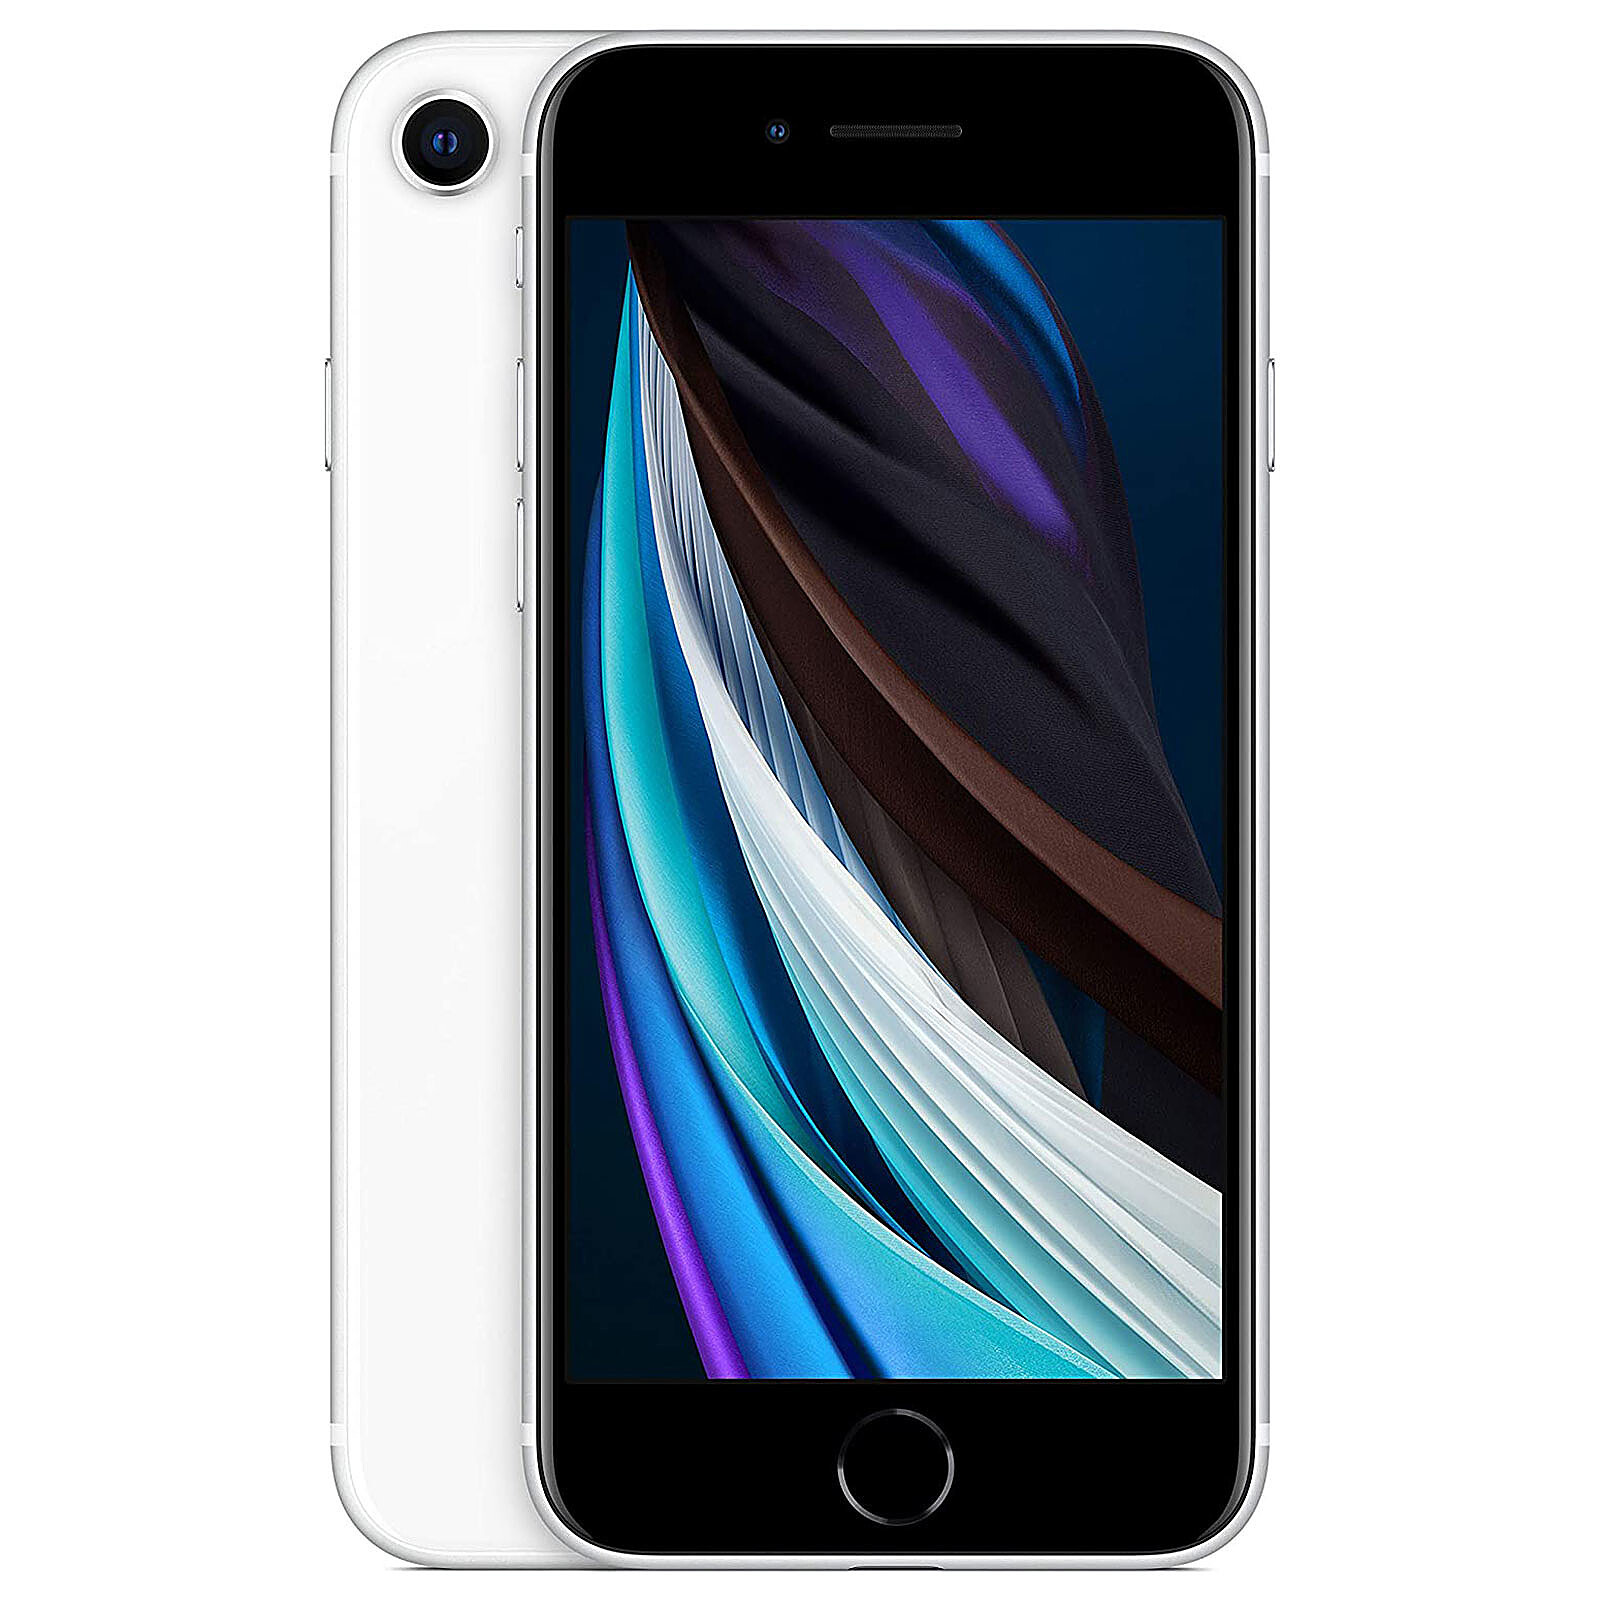 BEST OF APPLE Apple iPhone 8 64 Gb silver - Reacondicionado Grado